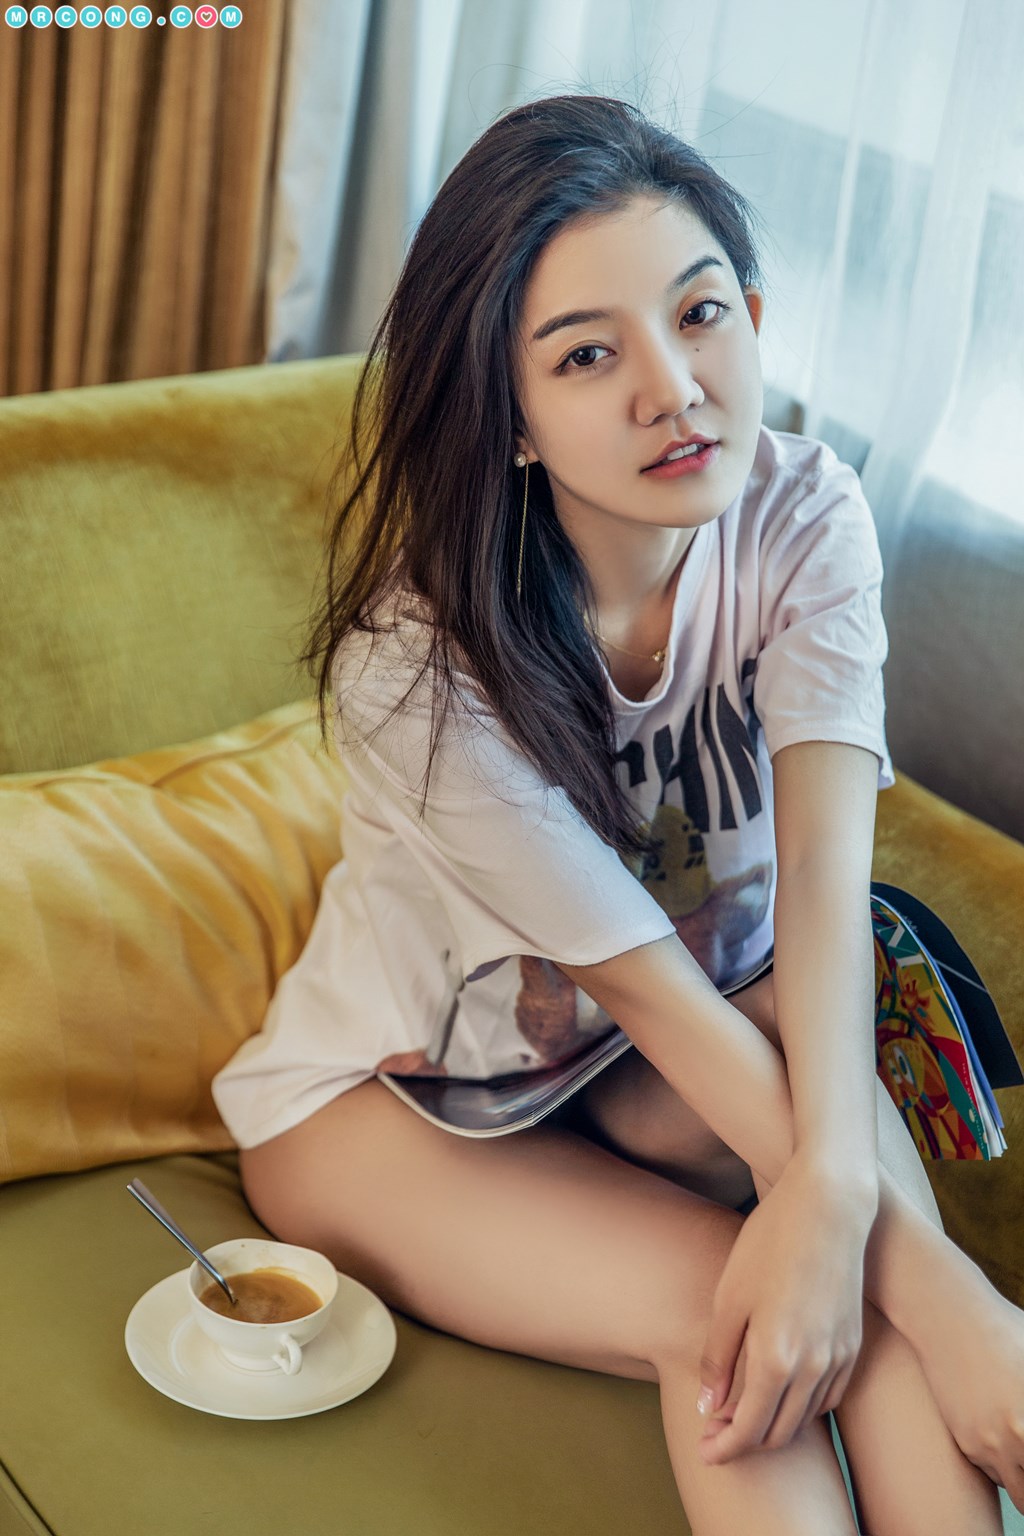 TouTiao 2018-02-22: Model Xiao Yu Er (小鱼儿) (23 photos) photo 1-14